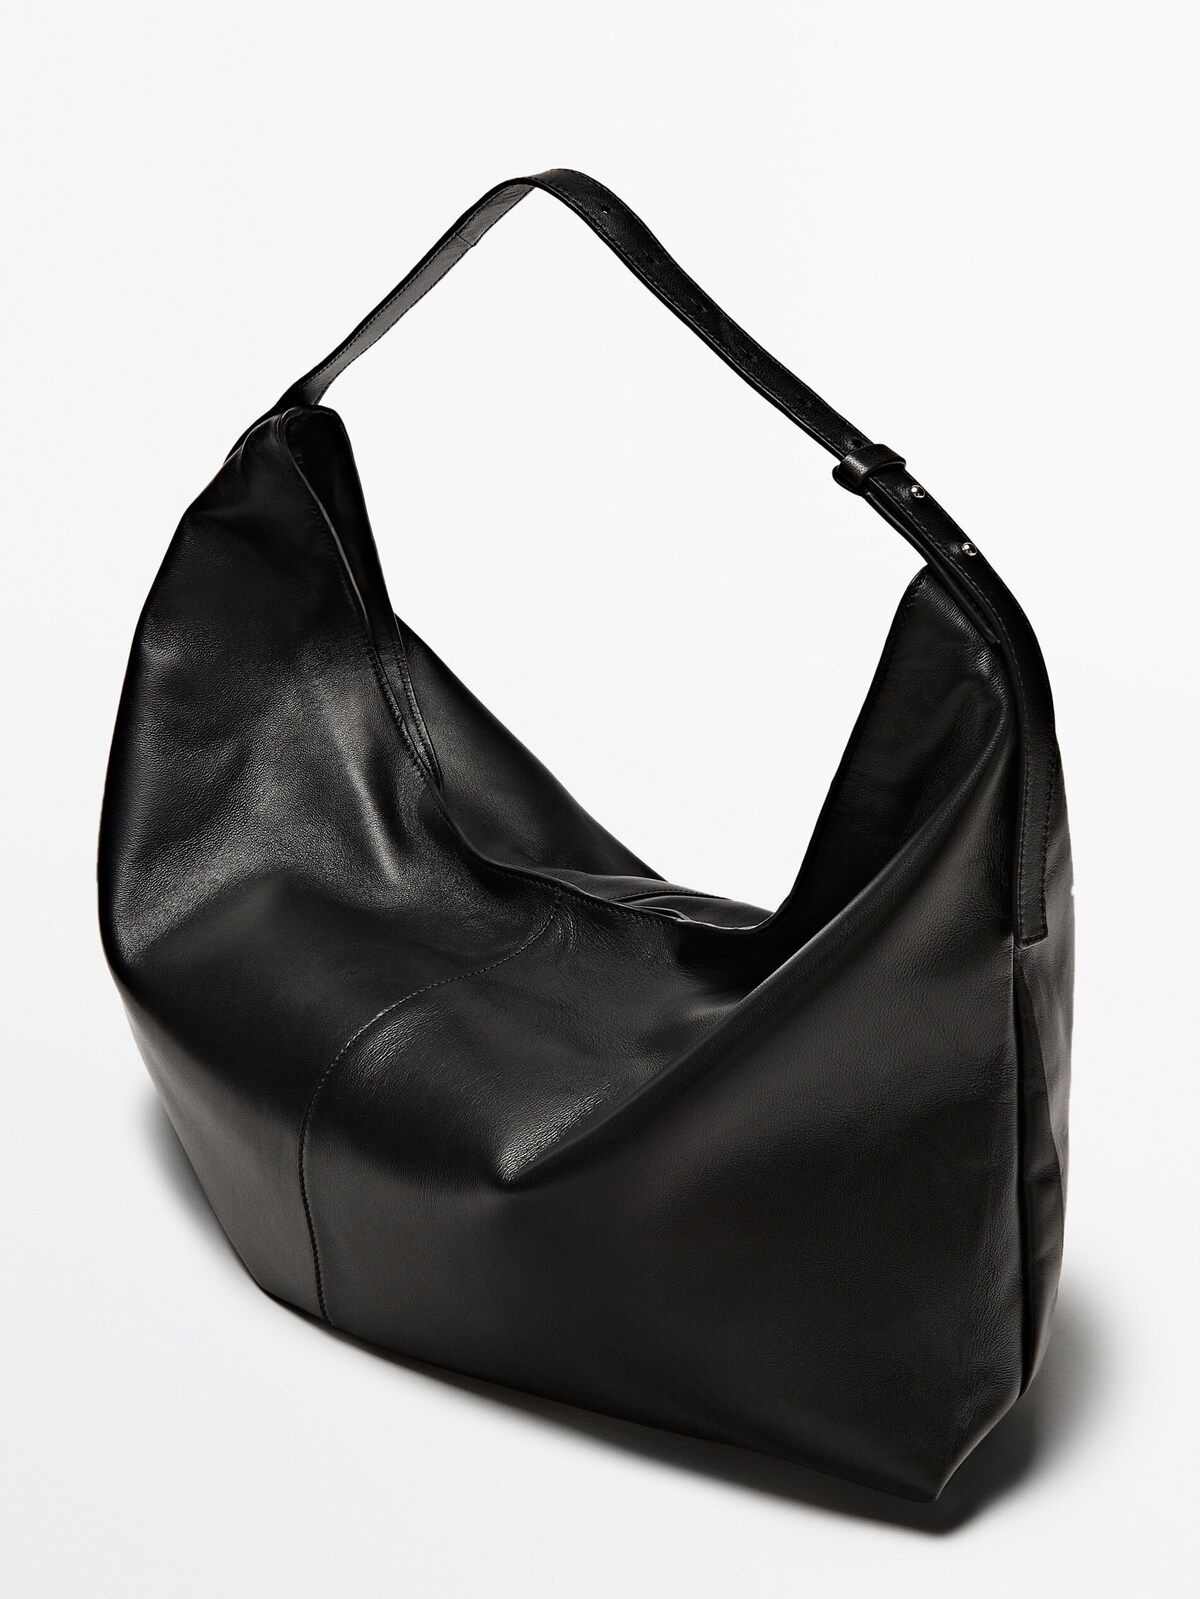 Maxi nappa leather half-moon bag | Massimo Dutti UK